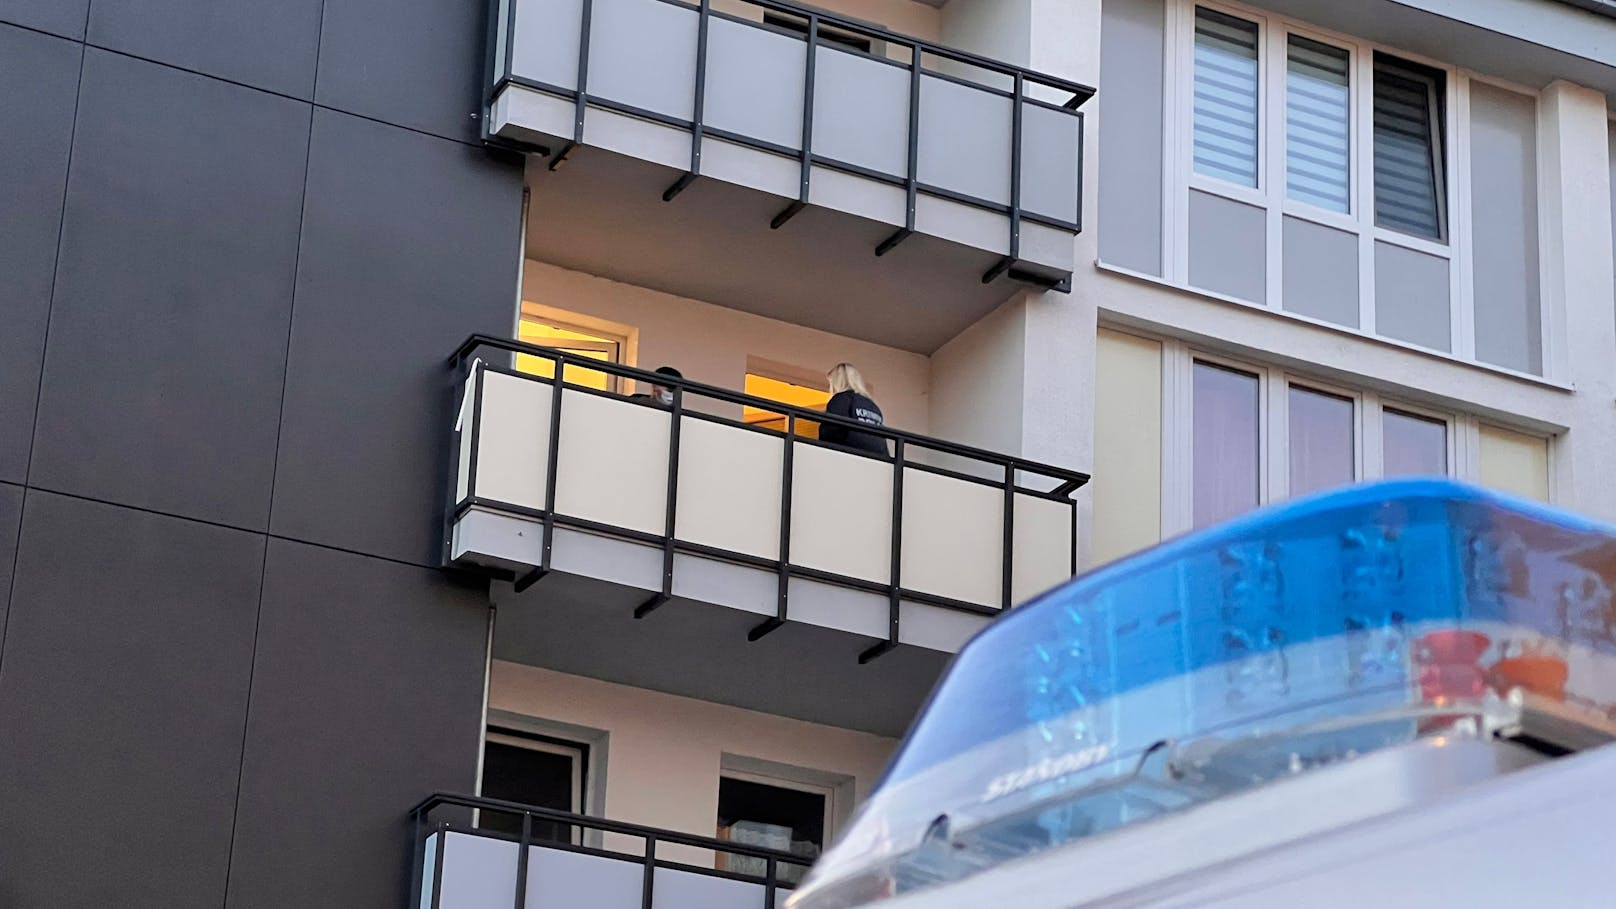 Die Polizei durchsuchte das Haus des bekannten Islamisten, nachdem sie Hinweise auf einen möglichen Anschlag erhalten hatte.